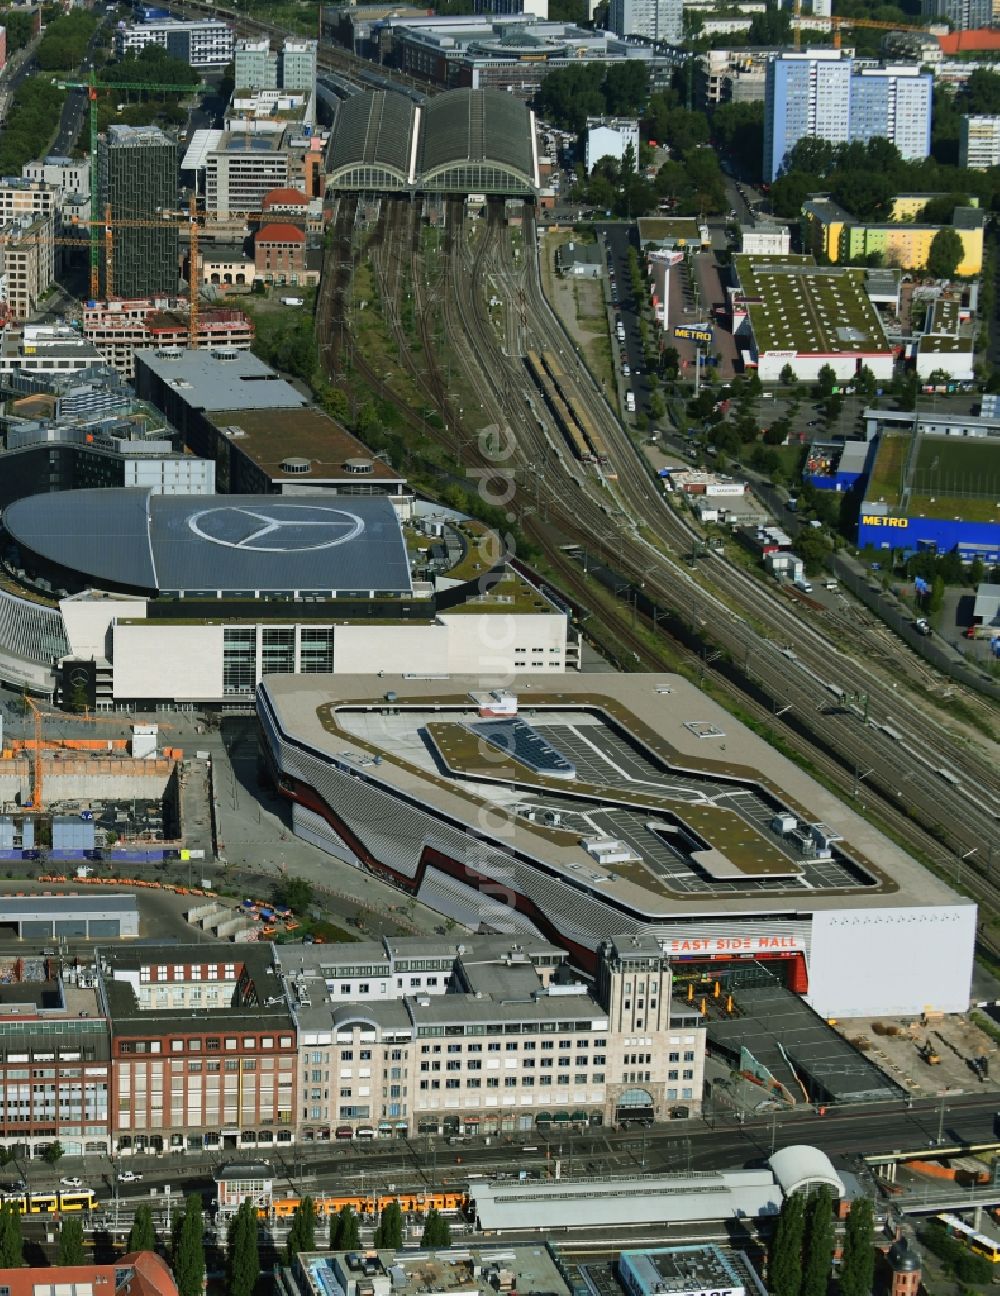 Luftaufnahme Berlin - Neubau des Gebäudekomplexes des Einkaufszentrum East Side Mall auf dem Anschutz - Areal im Friedrichshain in Berlin, Deutschland